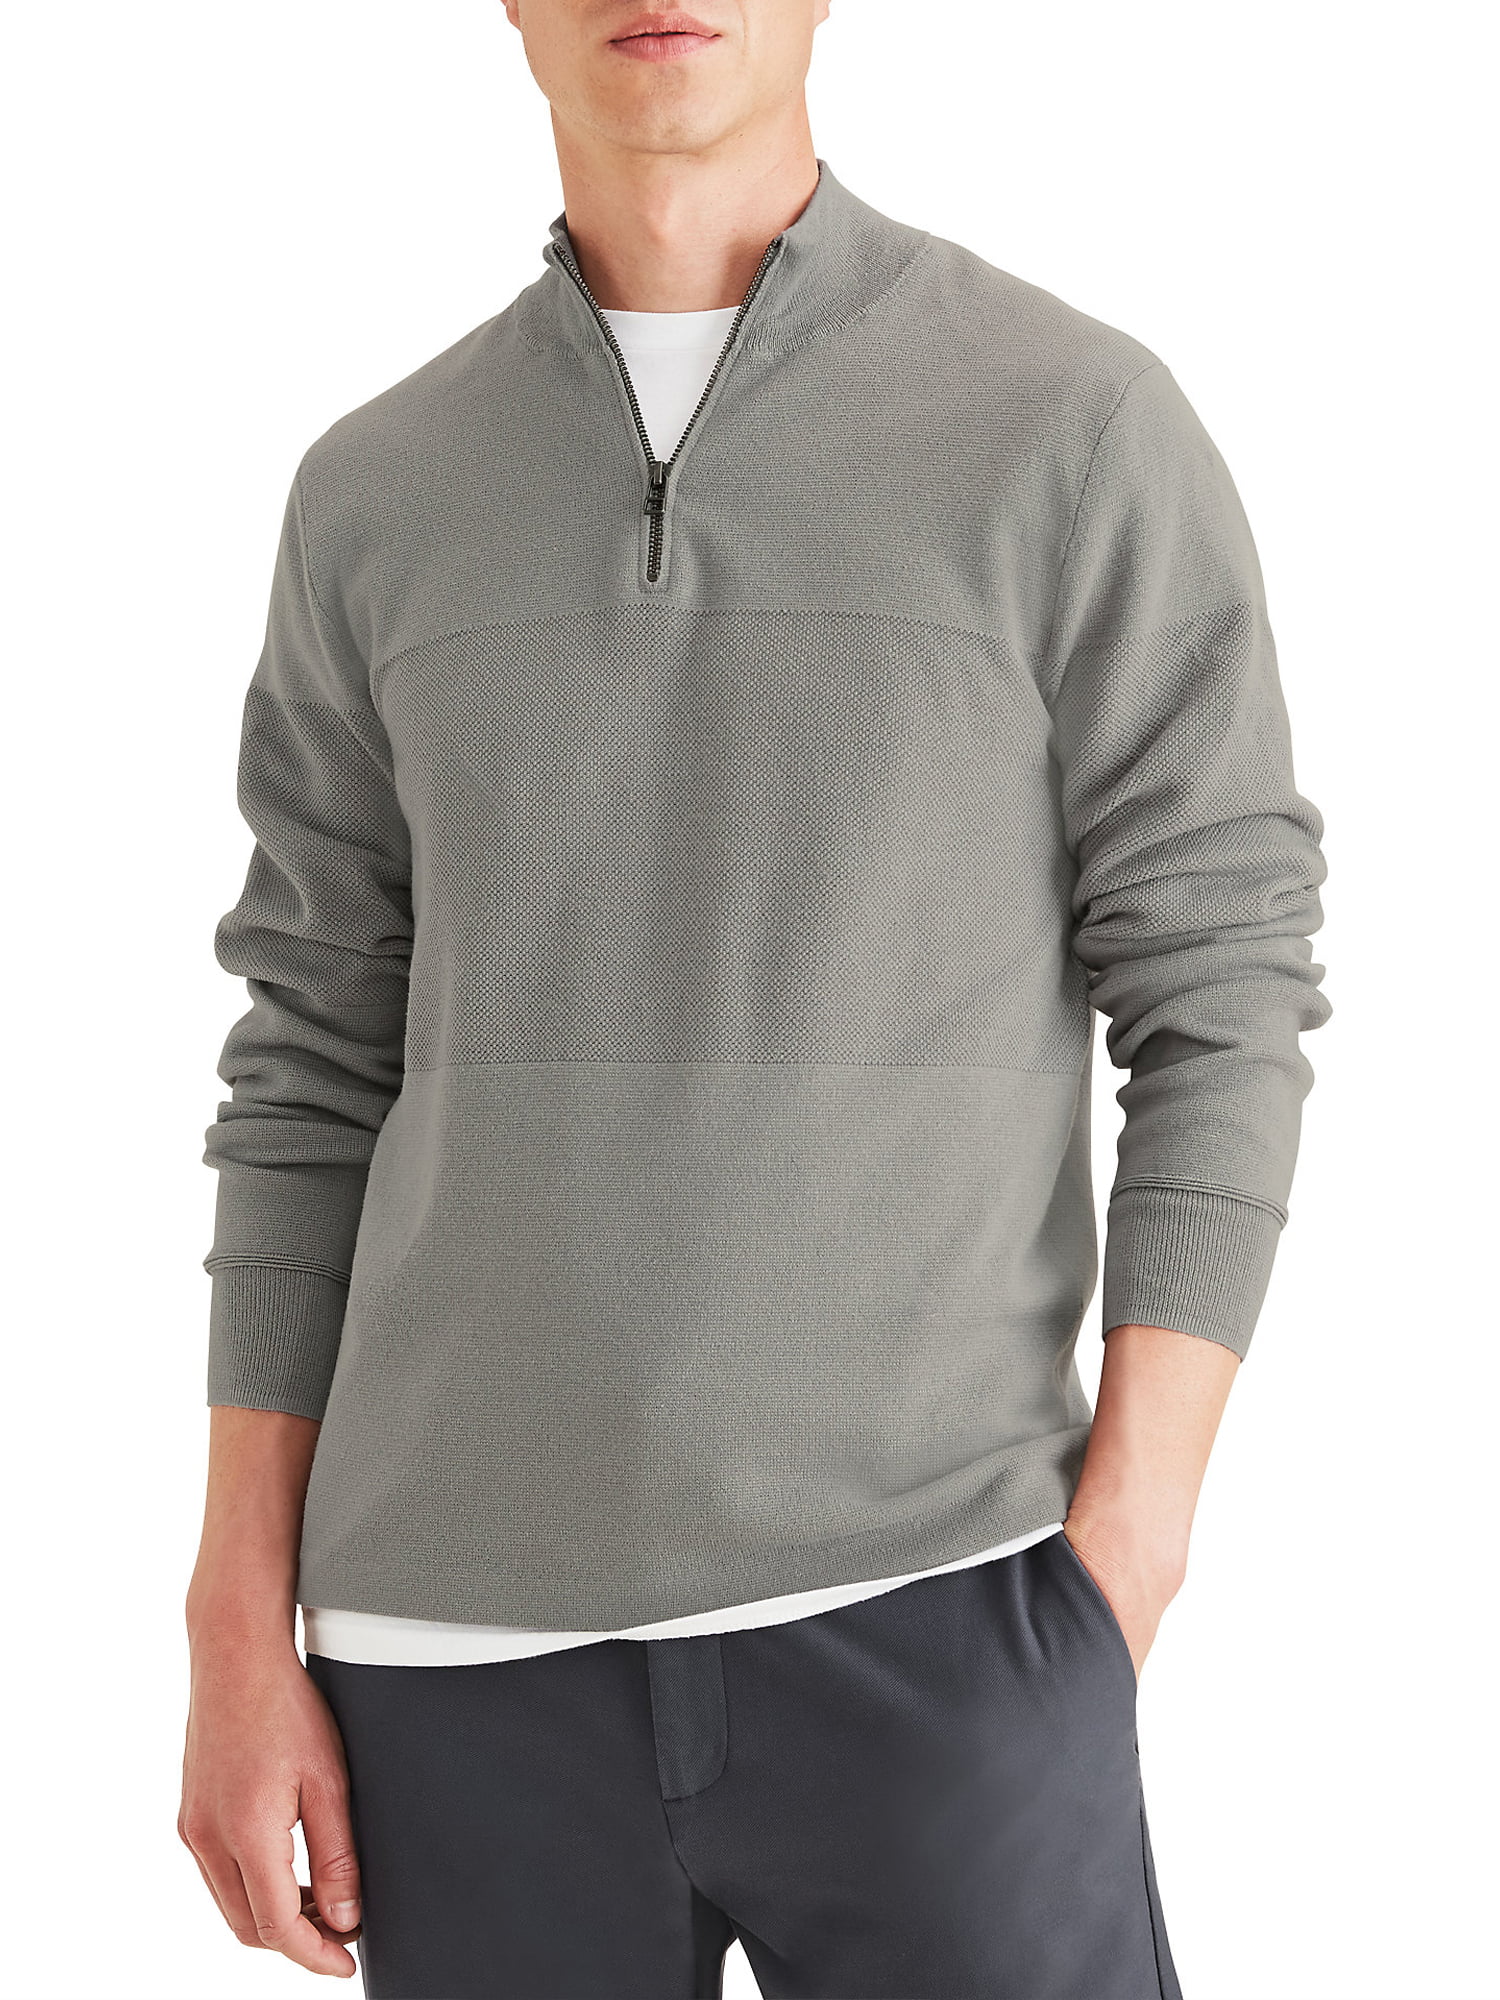 Dockers Men's Regular Fit Quarter Zip Sweater - Walmart.com